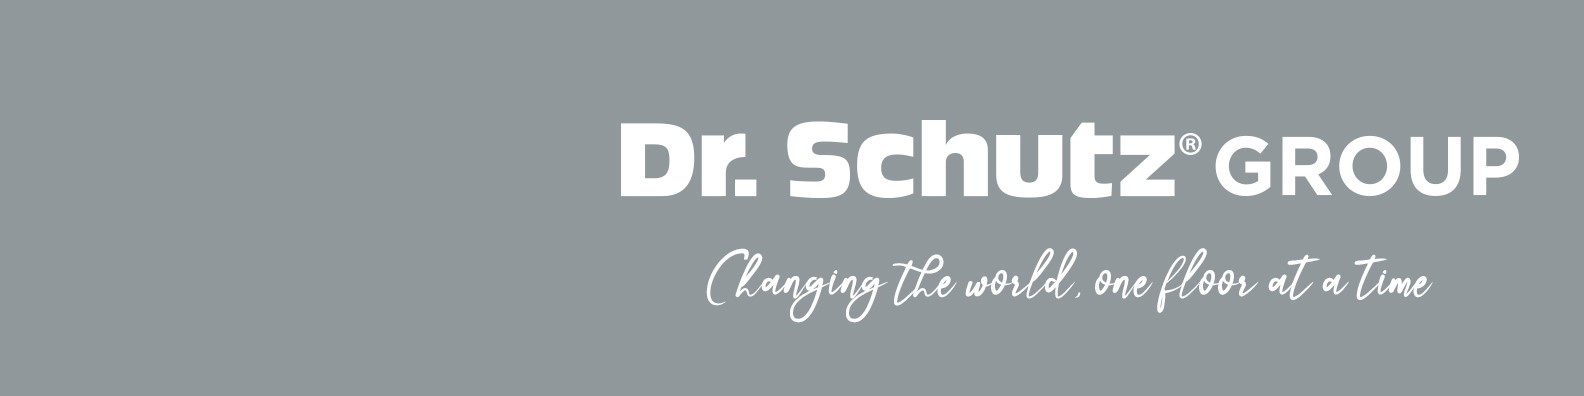 Bewerbung bei Dr. Schutz GmbH